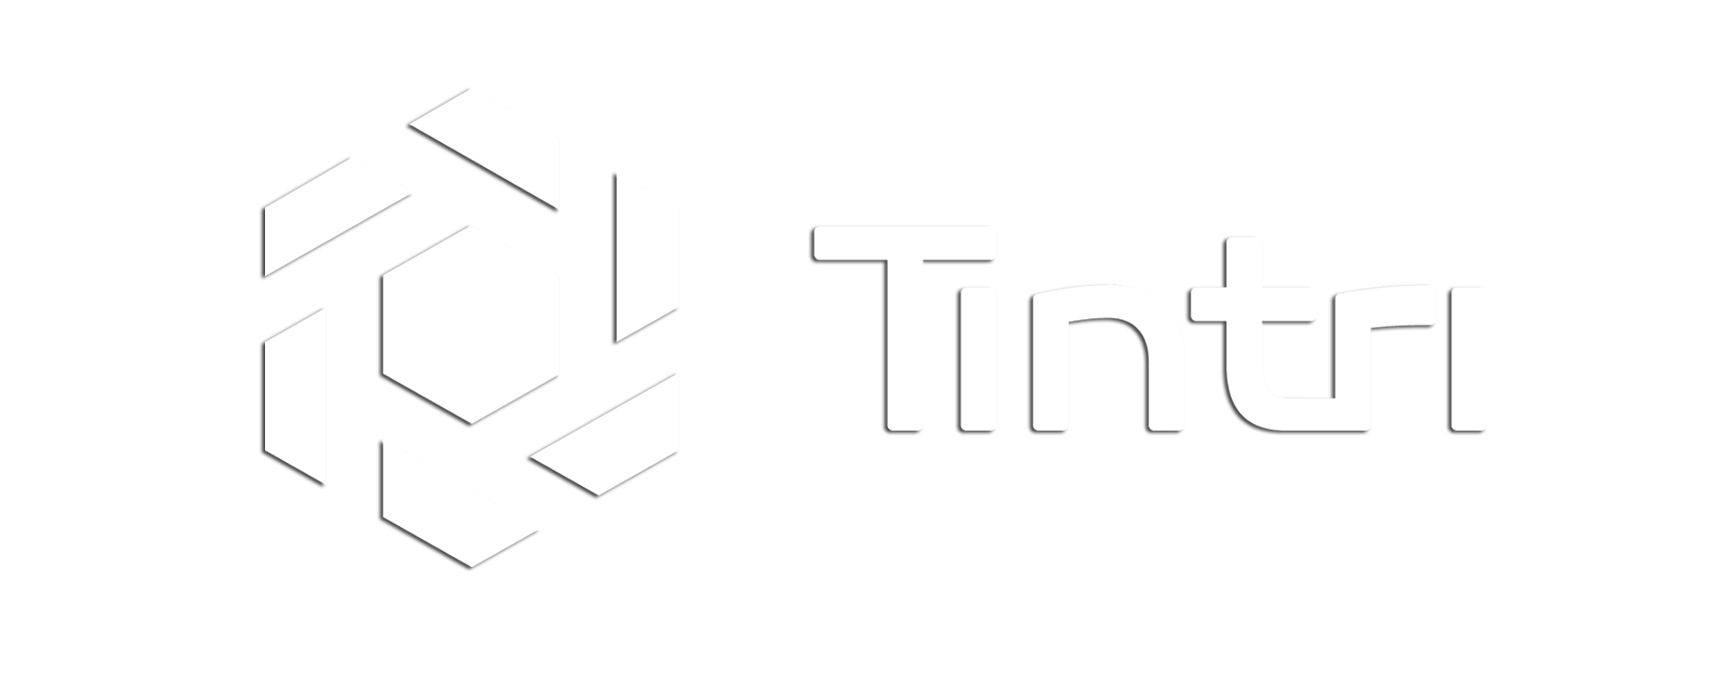 Tintri logo in white